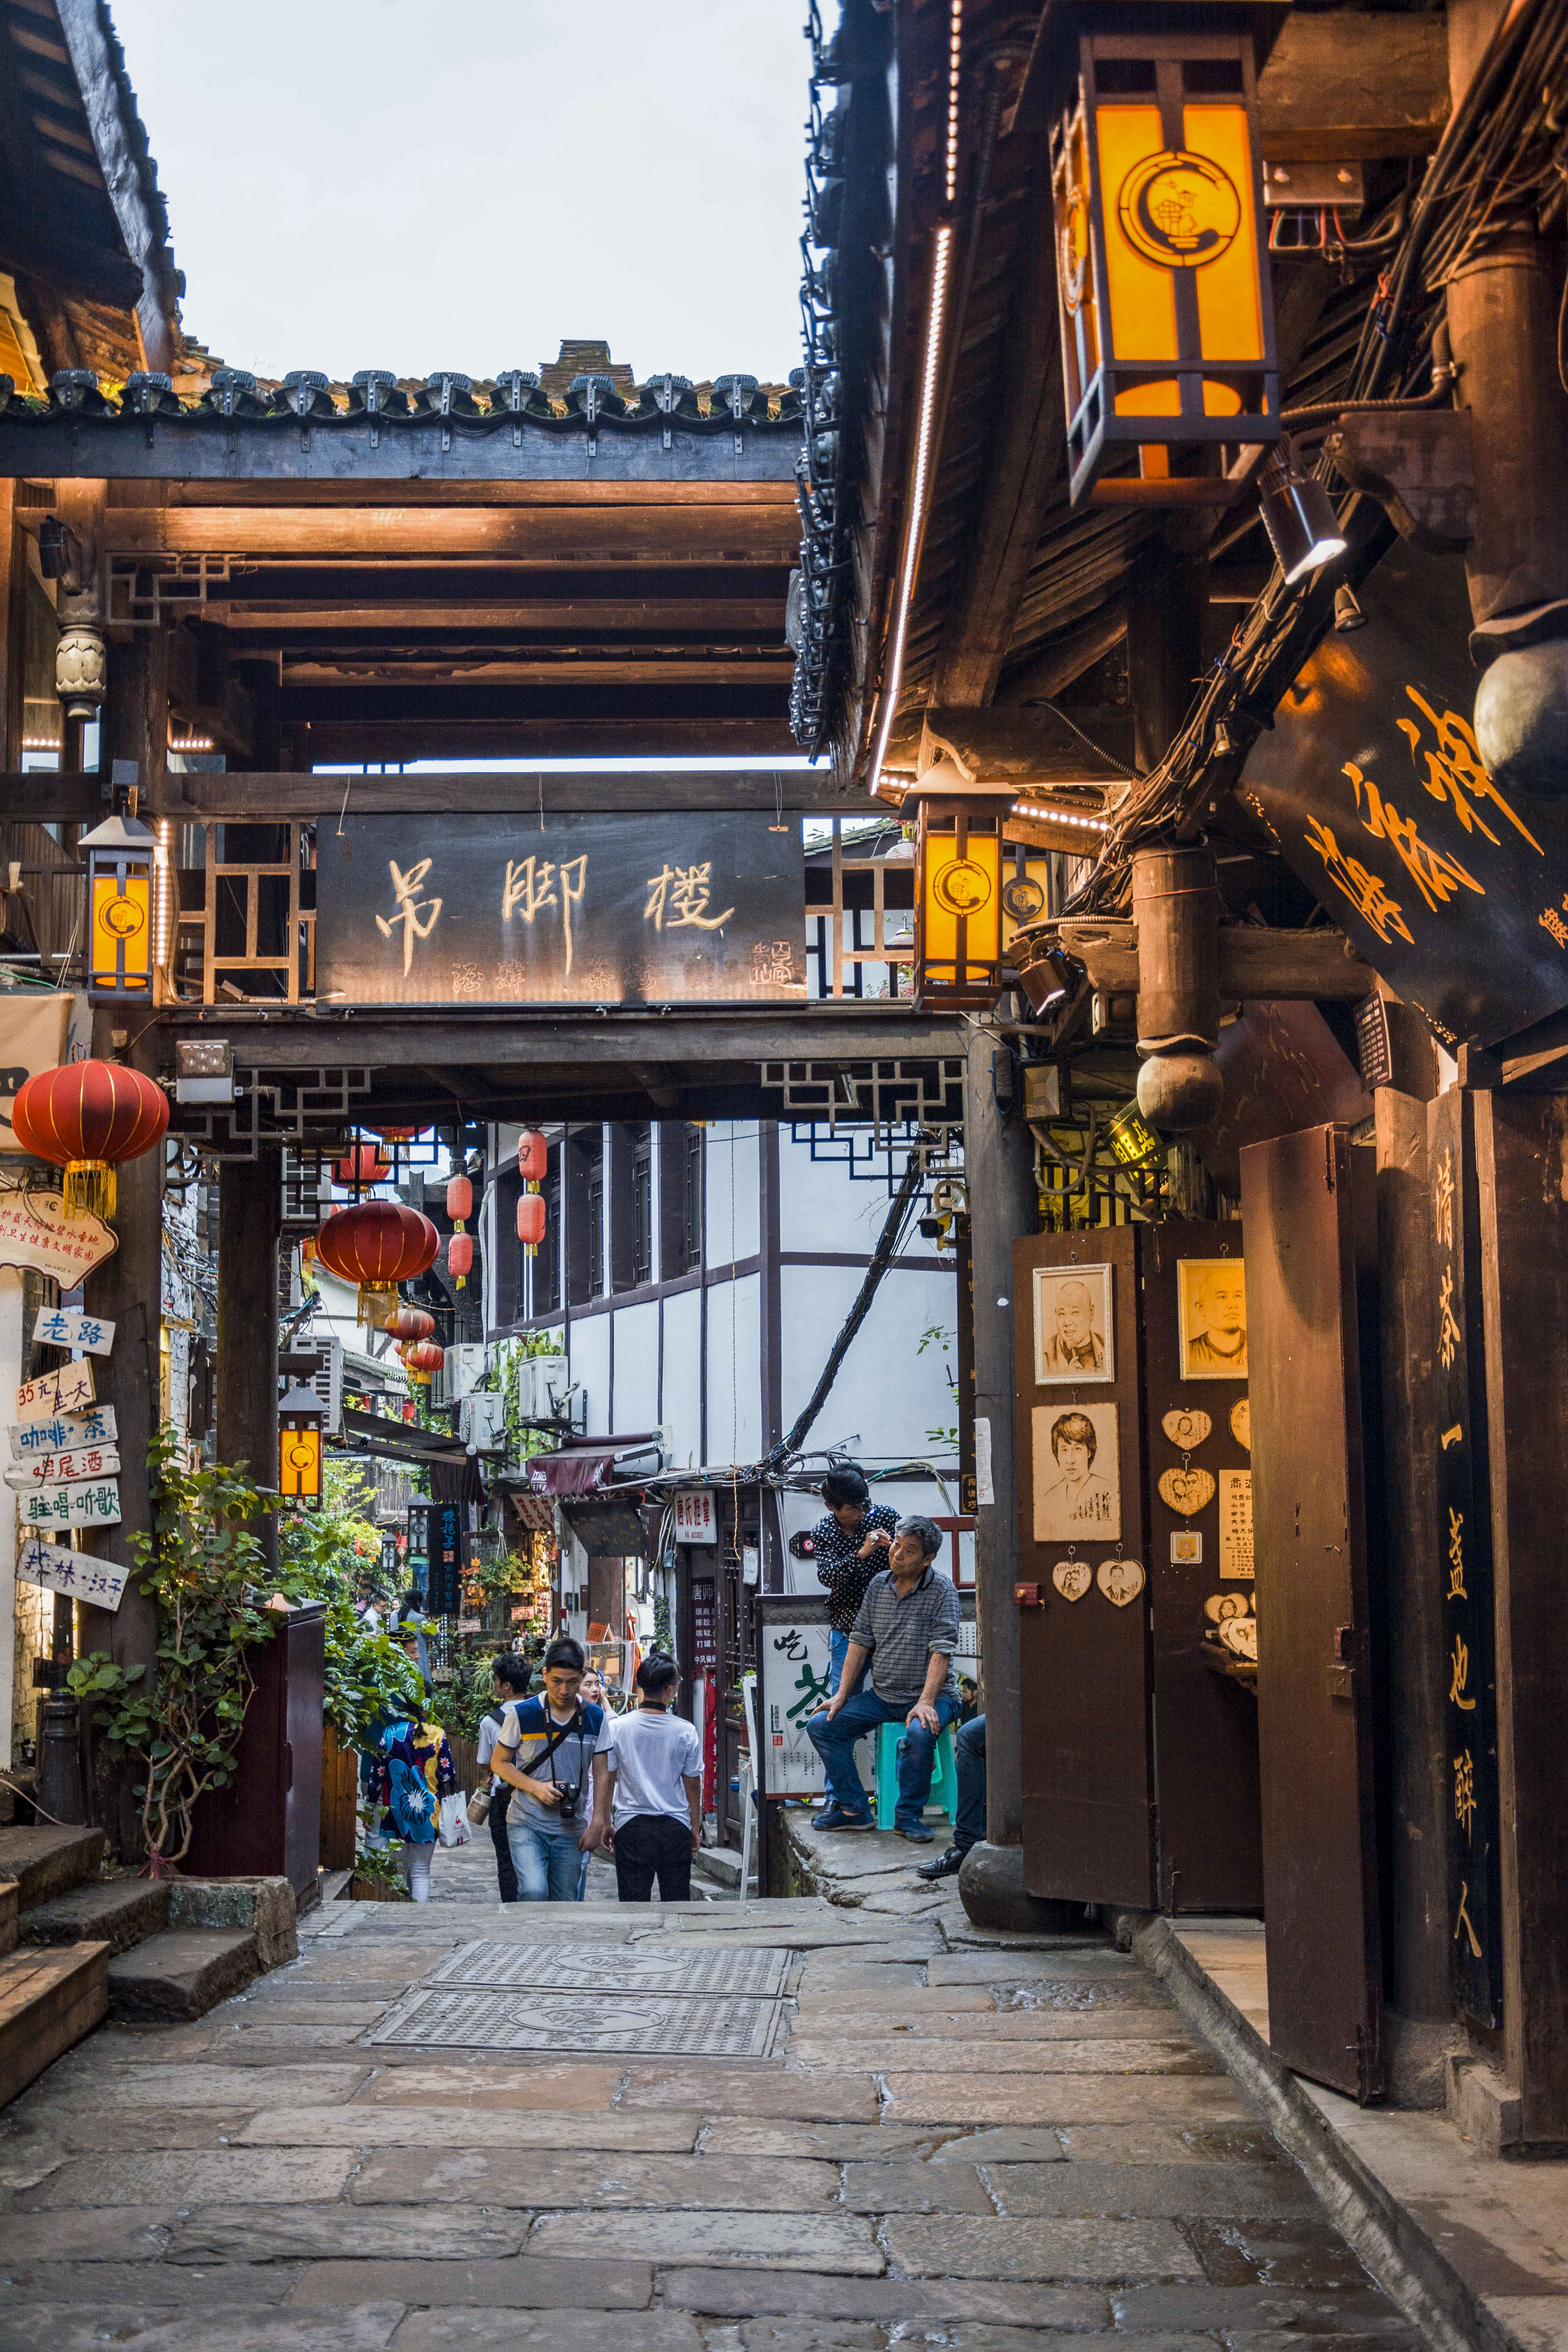 重庆有名的古街,作为4a级景区却不收门票,但多数游客依旧给差评